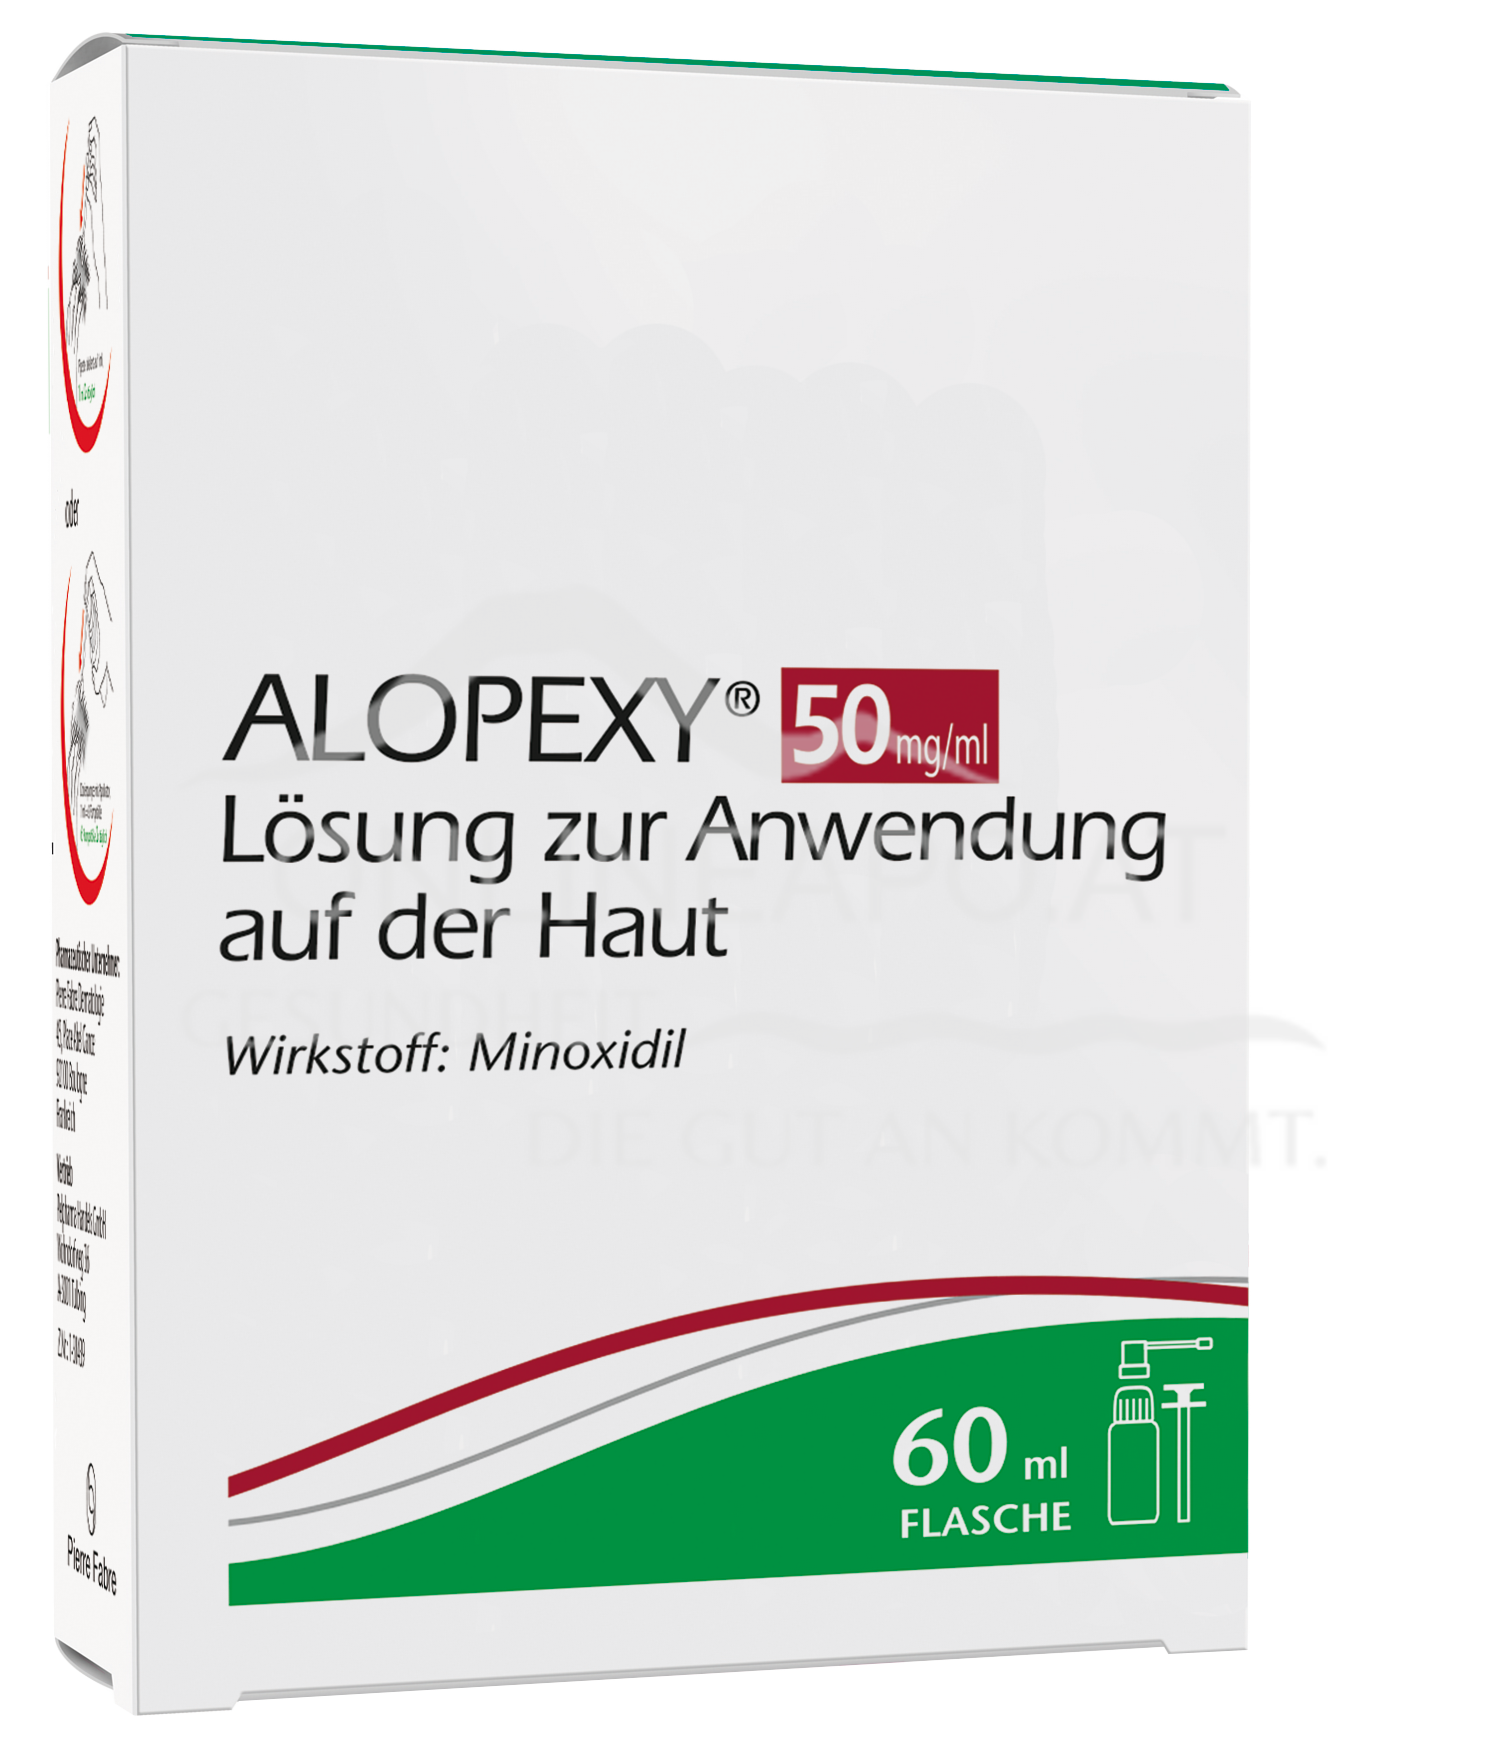 ALOPEXY 50 mg/ml Minoxidil Lösung